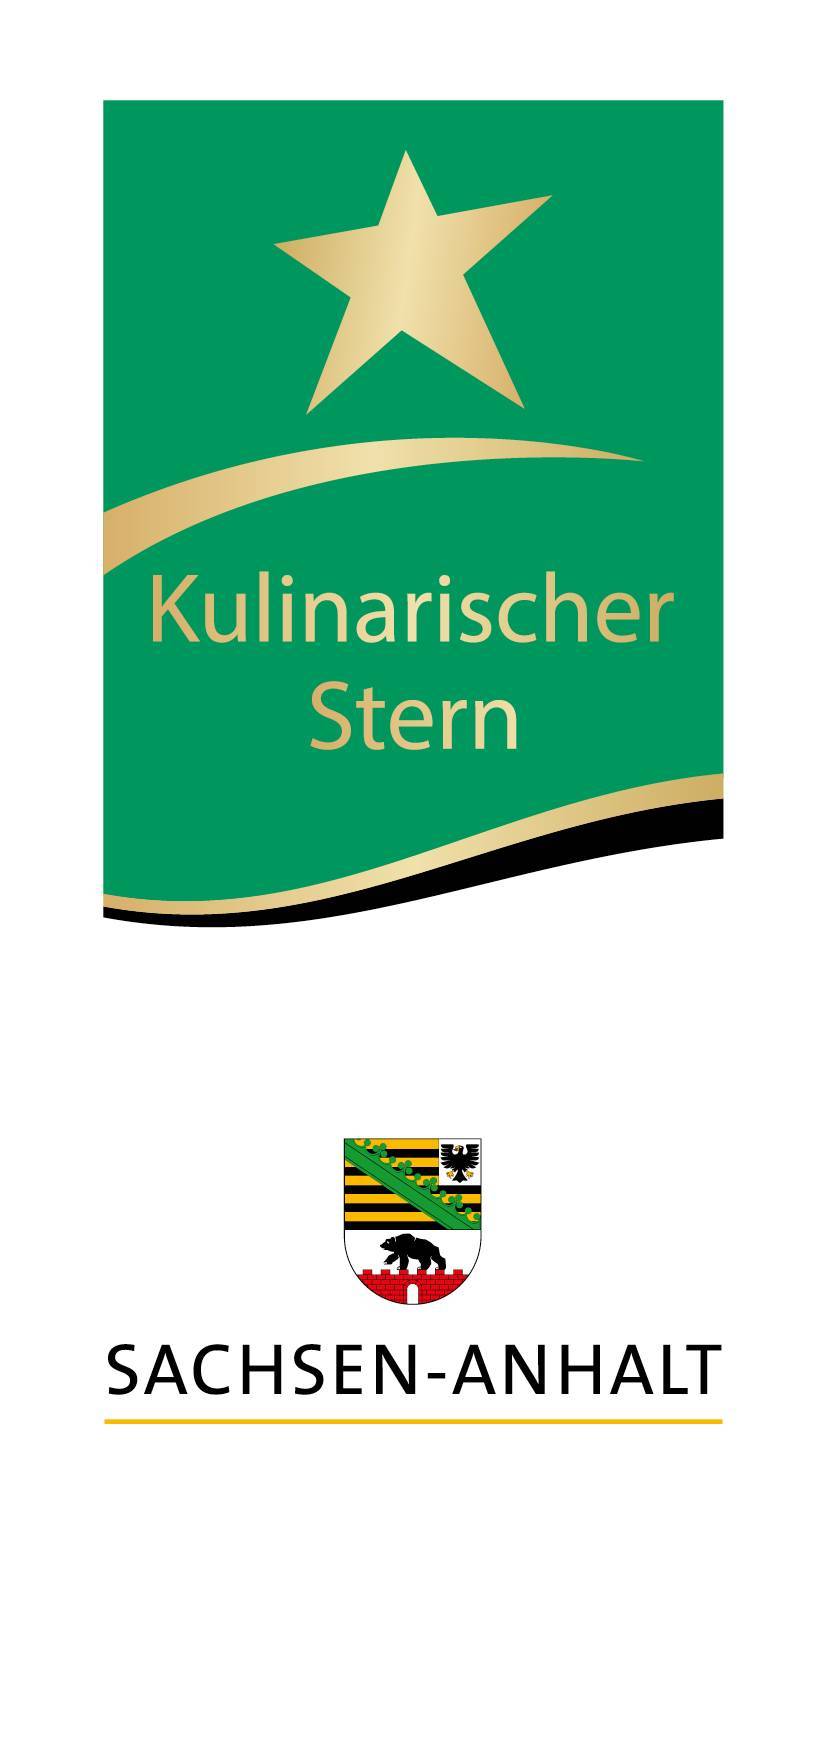 Kulinarischer Stern Logo